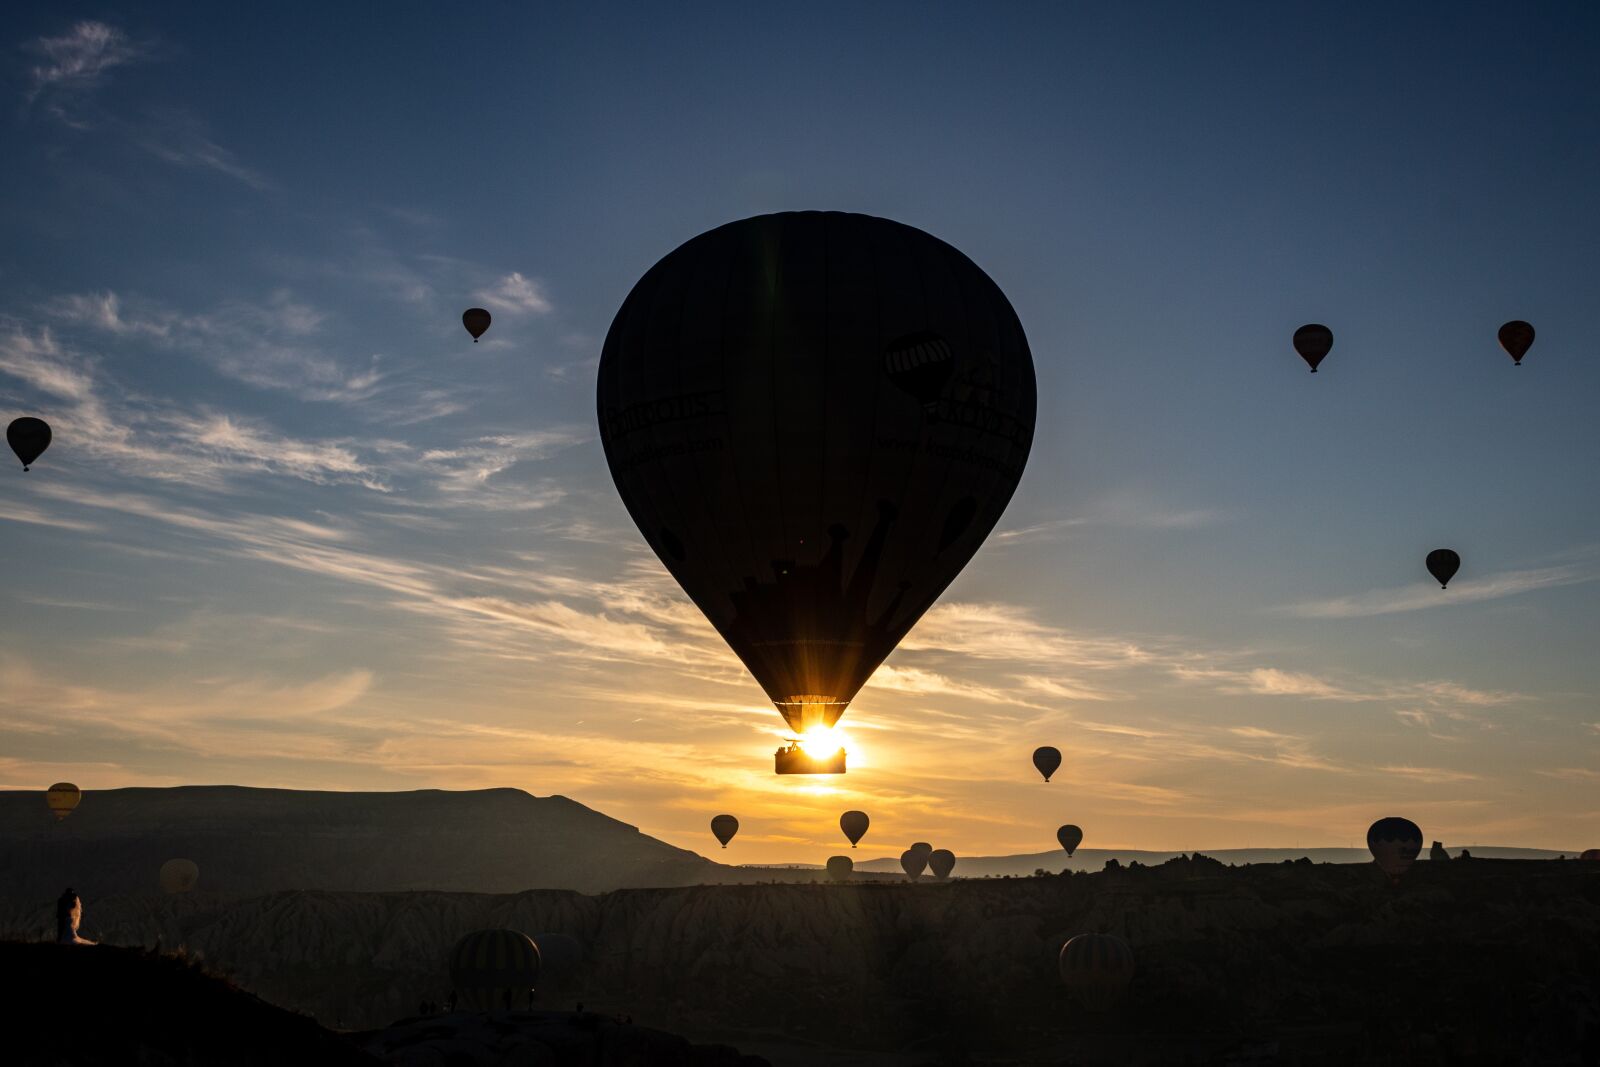 Canon EOS 800D (EOS Rebel T7i / EOS Kiss X9i) sample photo. Hot air balloon, cappadocia photography